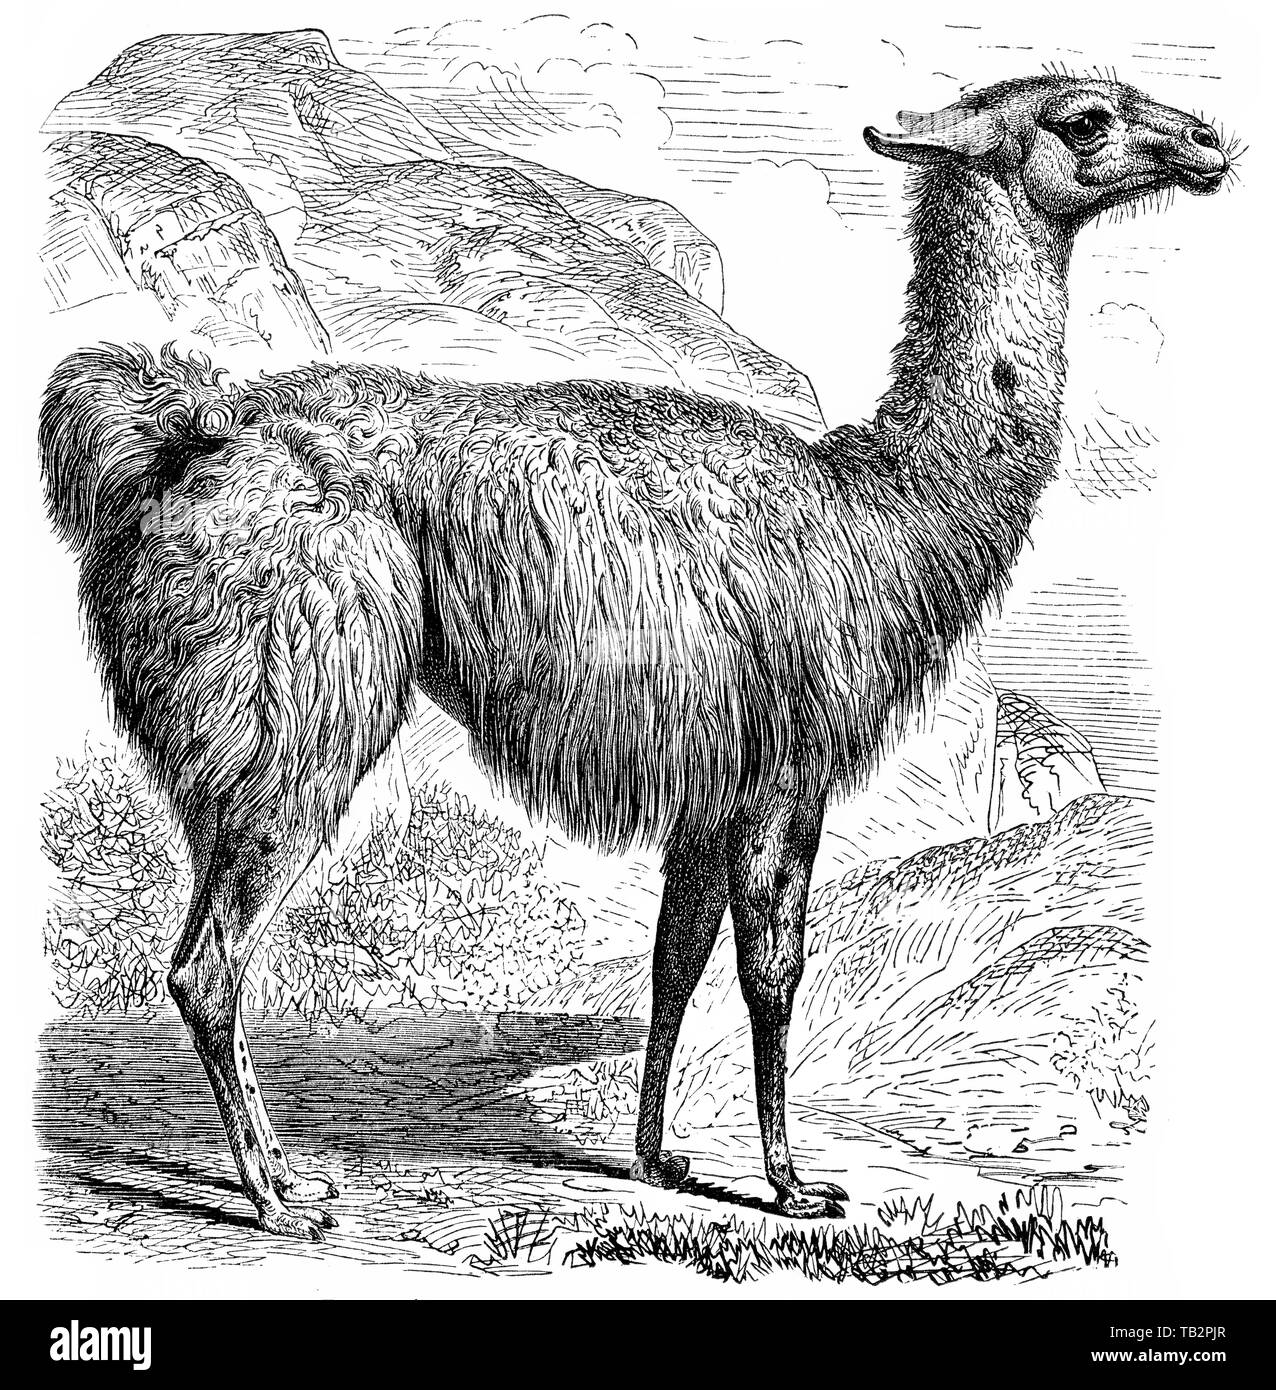 Historische, zeichnerische Darstellung, Lama (Lama glama), Kamele (Camelidae), eine Säugetierfamilie aus der Ordnung der Paarhufer (Artiodactyla), Tylopoda), 19. Jahrhundert, Foto Stock